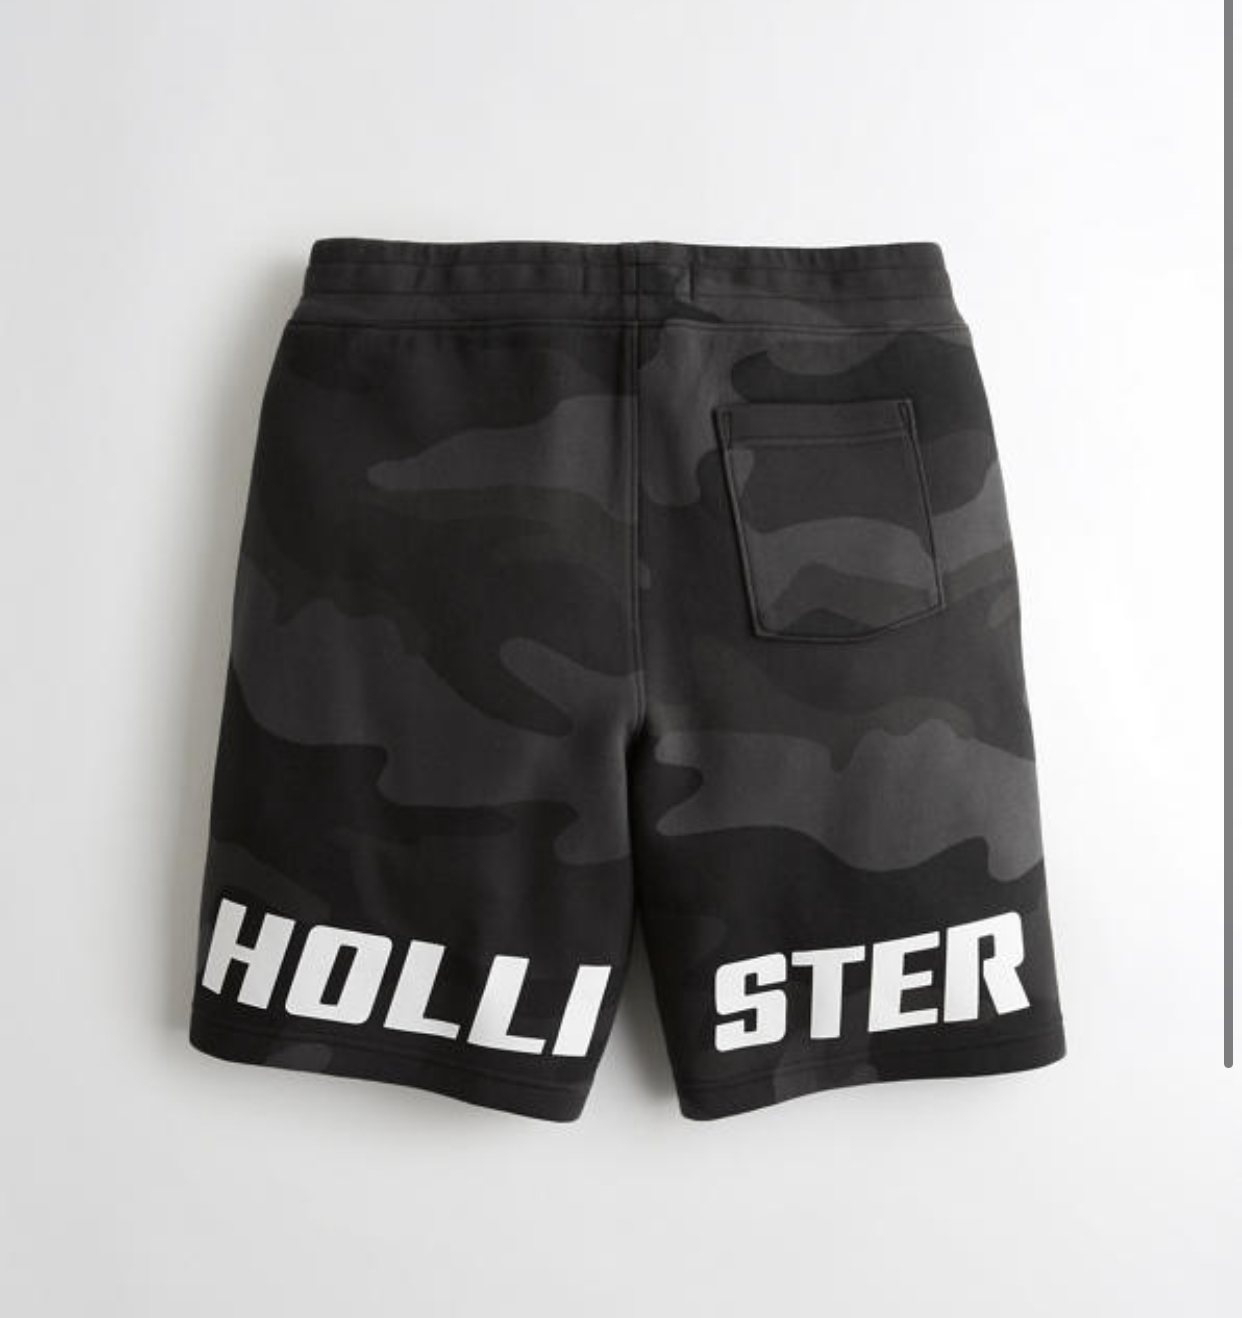 hollister jersey shorts